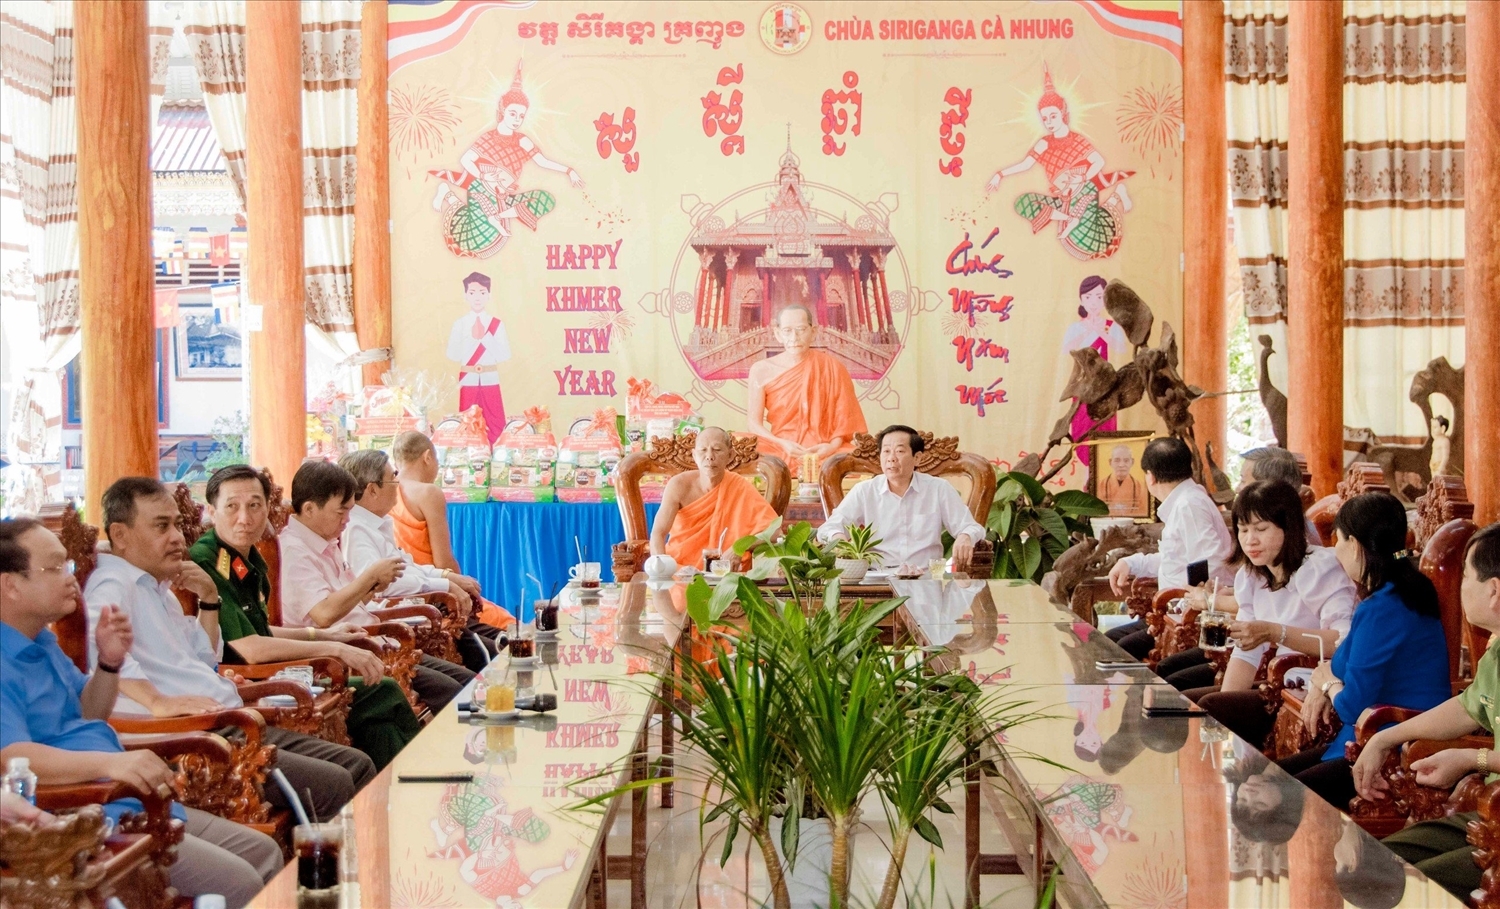 Ông Đỗ Thanh Bình, Bí thư Tỉnh ủy tỉnh Kiên Giang đến thăm và gặp gỡ các vị sư sãi và Người có uy tín tại Chùa Khmer Cà Nhung